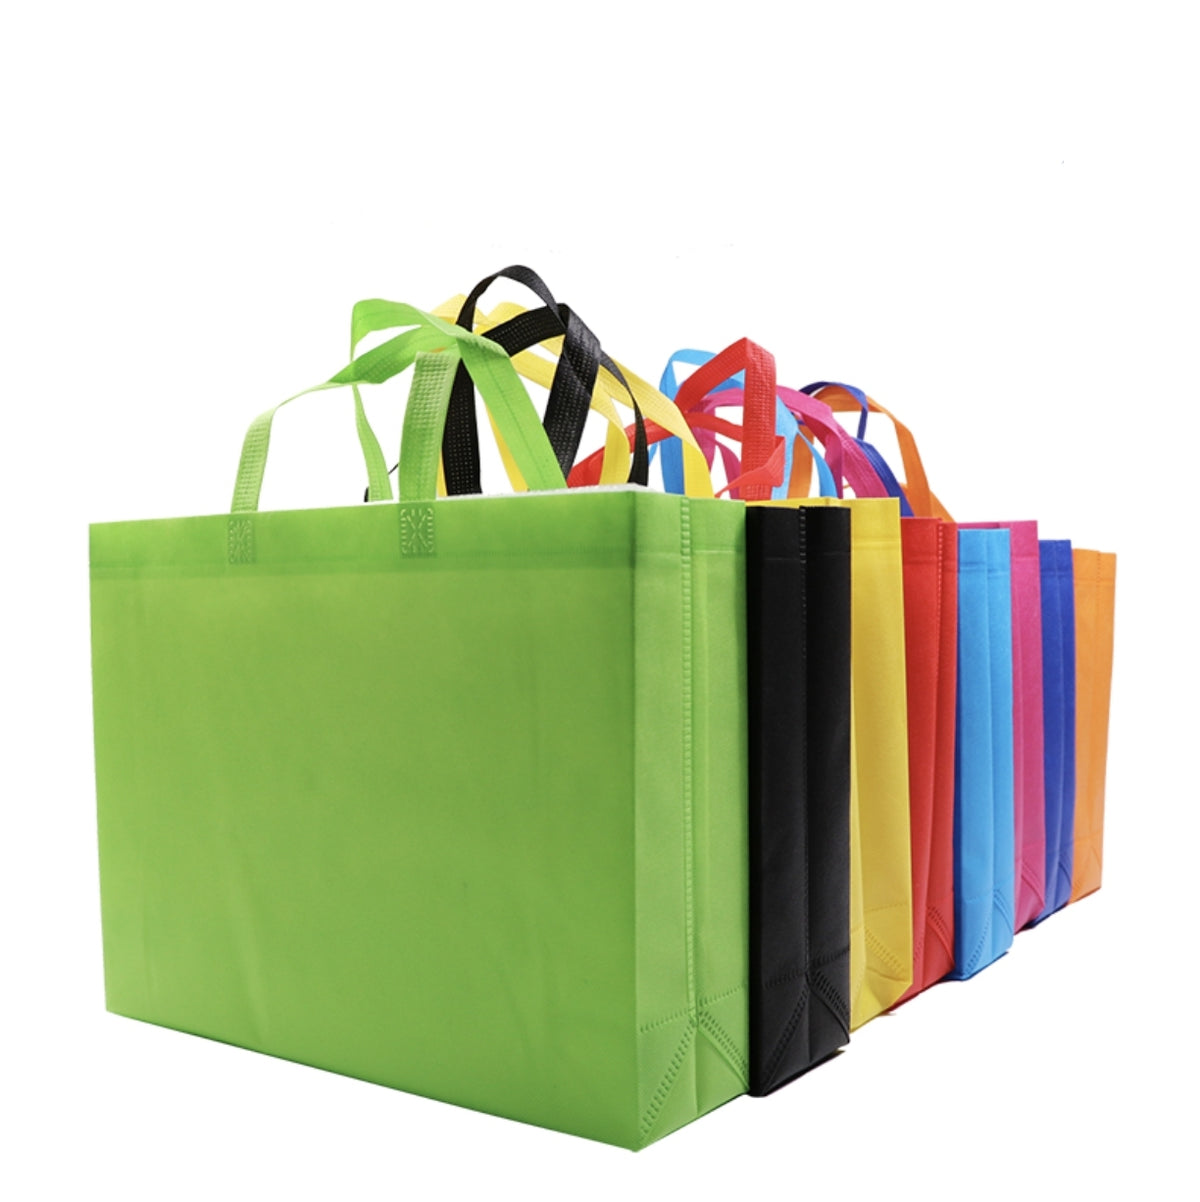 【客製化】環保不織布購物袋(有底有側款) | 禮品、贈品專業客製禮贈品顧問 | 禮品、贈品專屬客製禮贈品專家